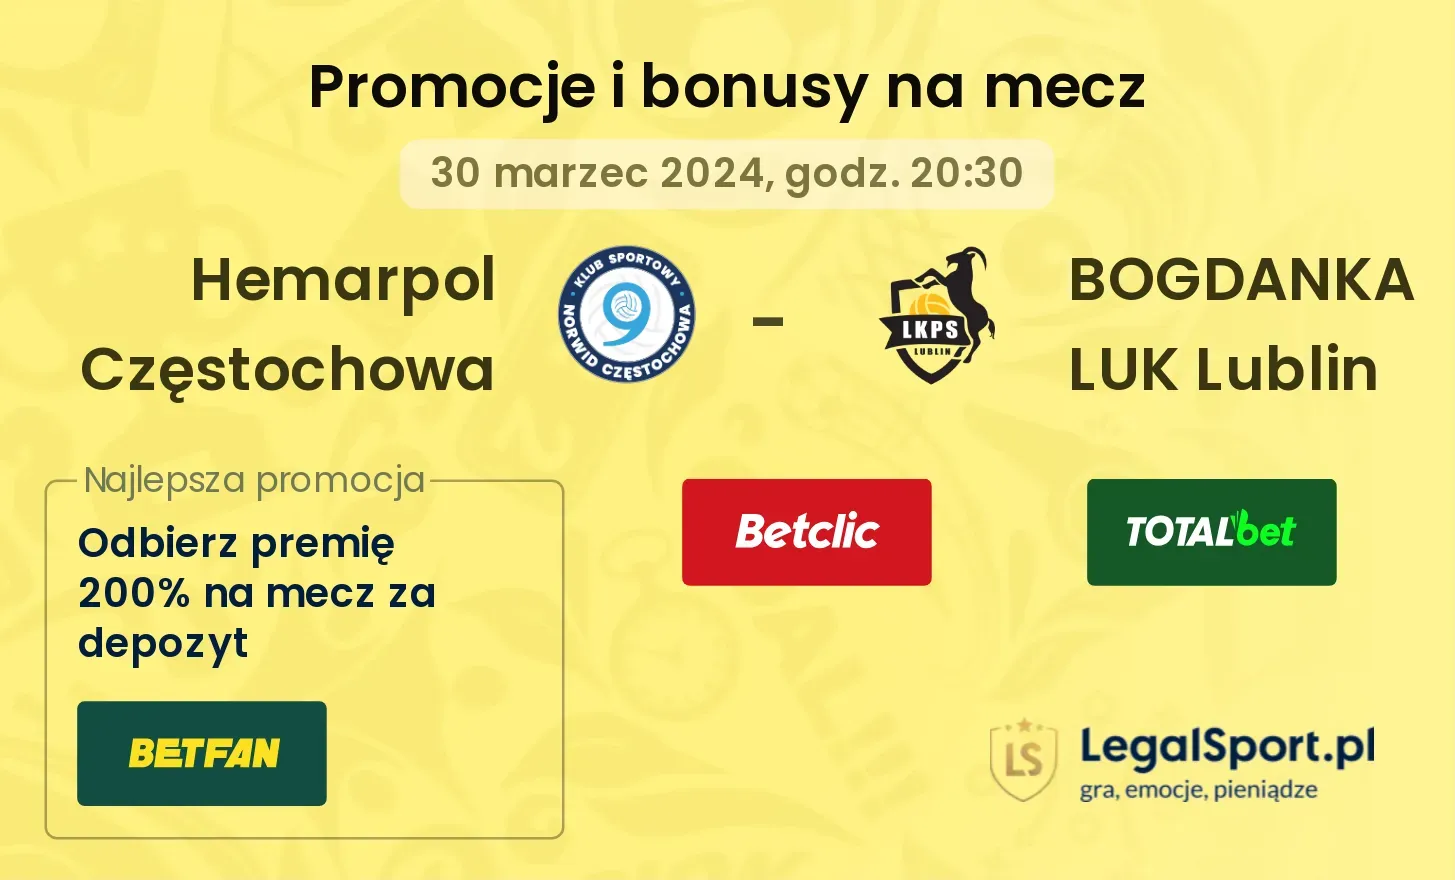 Hemarpol Częstochowa - BOGDANKA LUK Lublin promocje bonusy na mecz